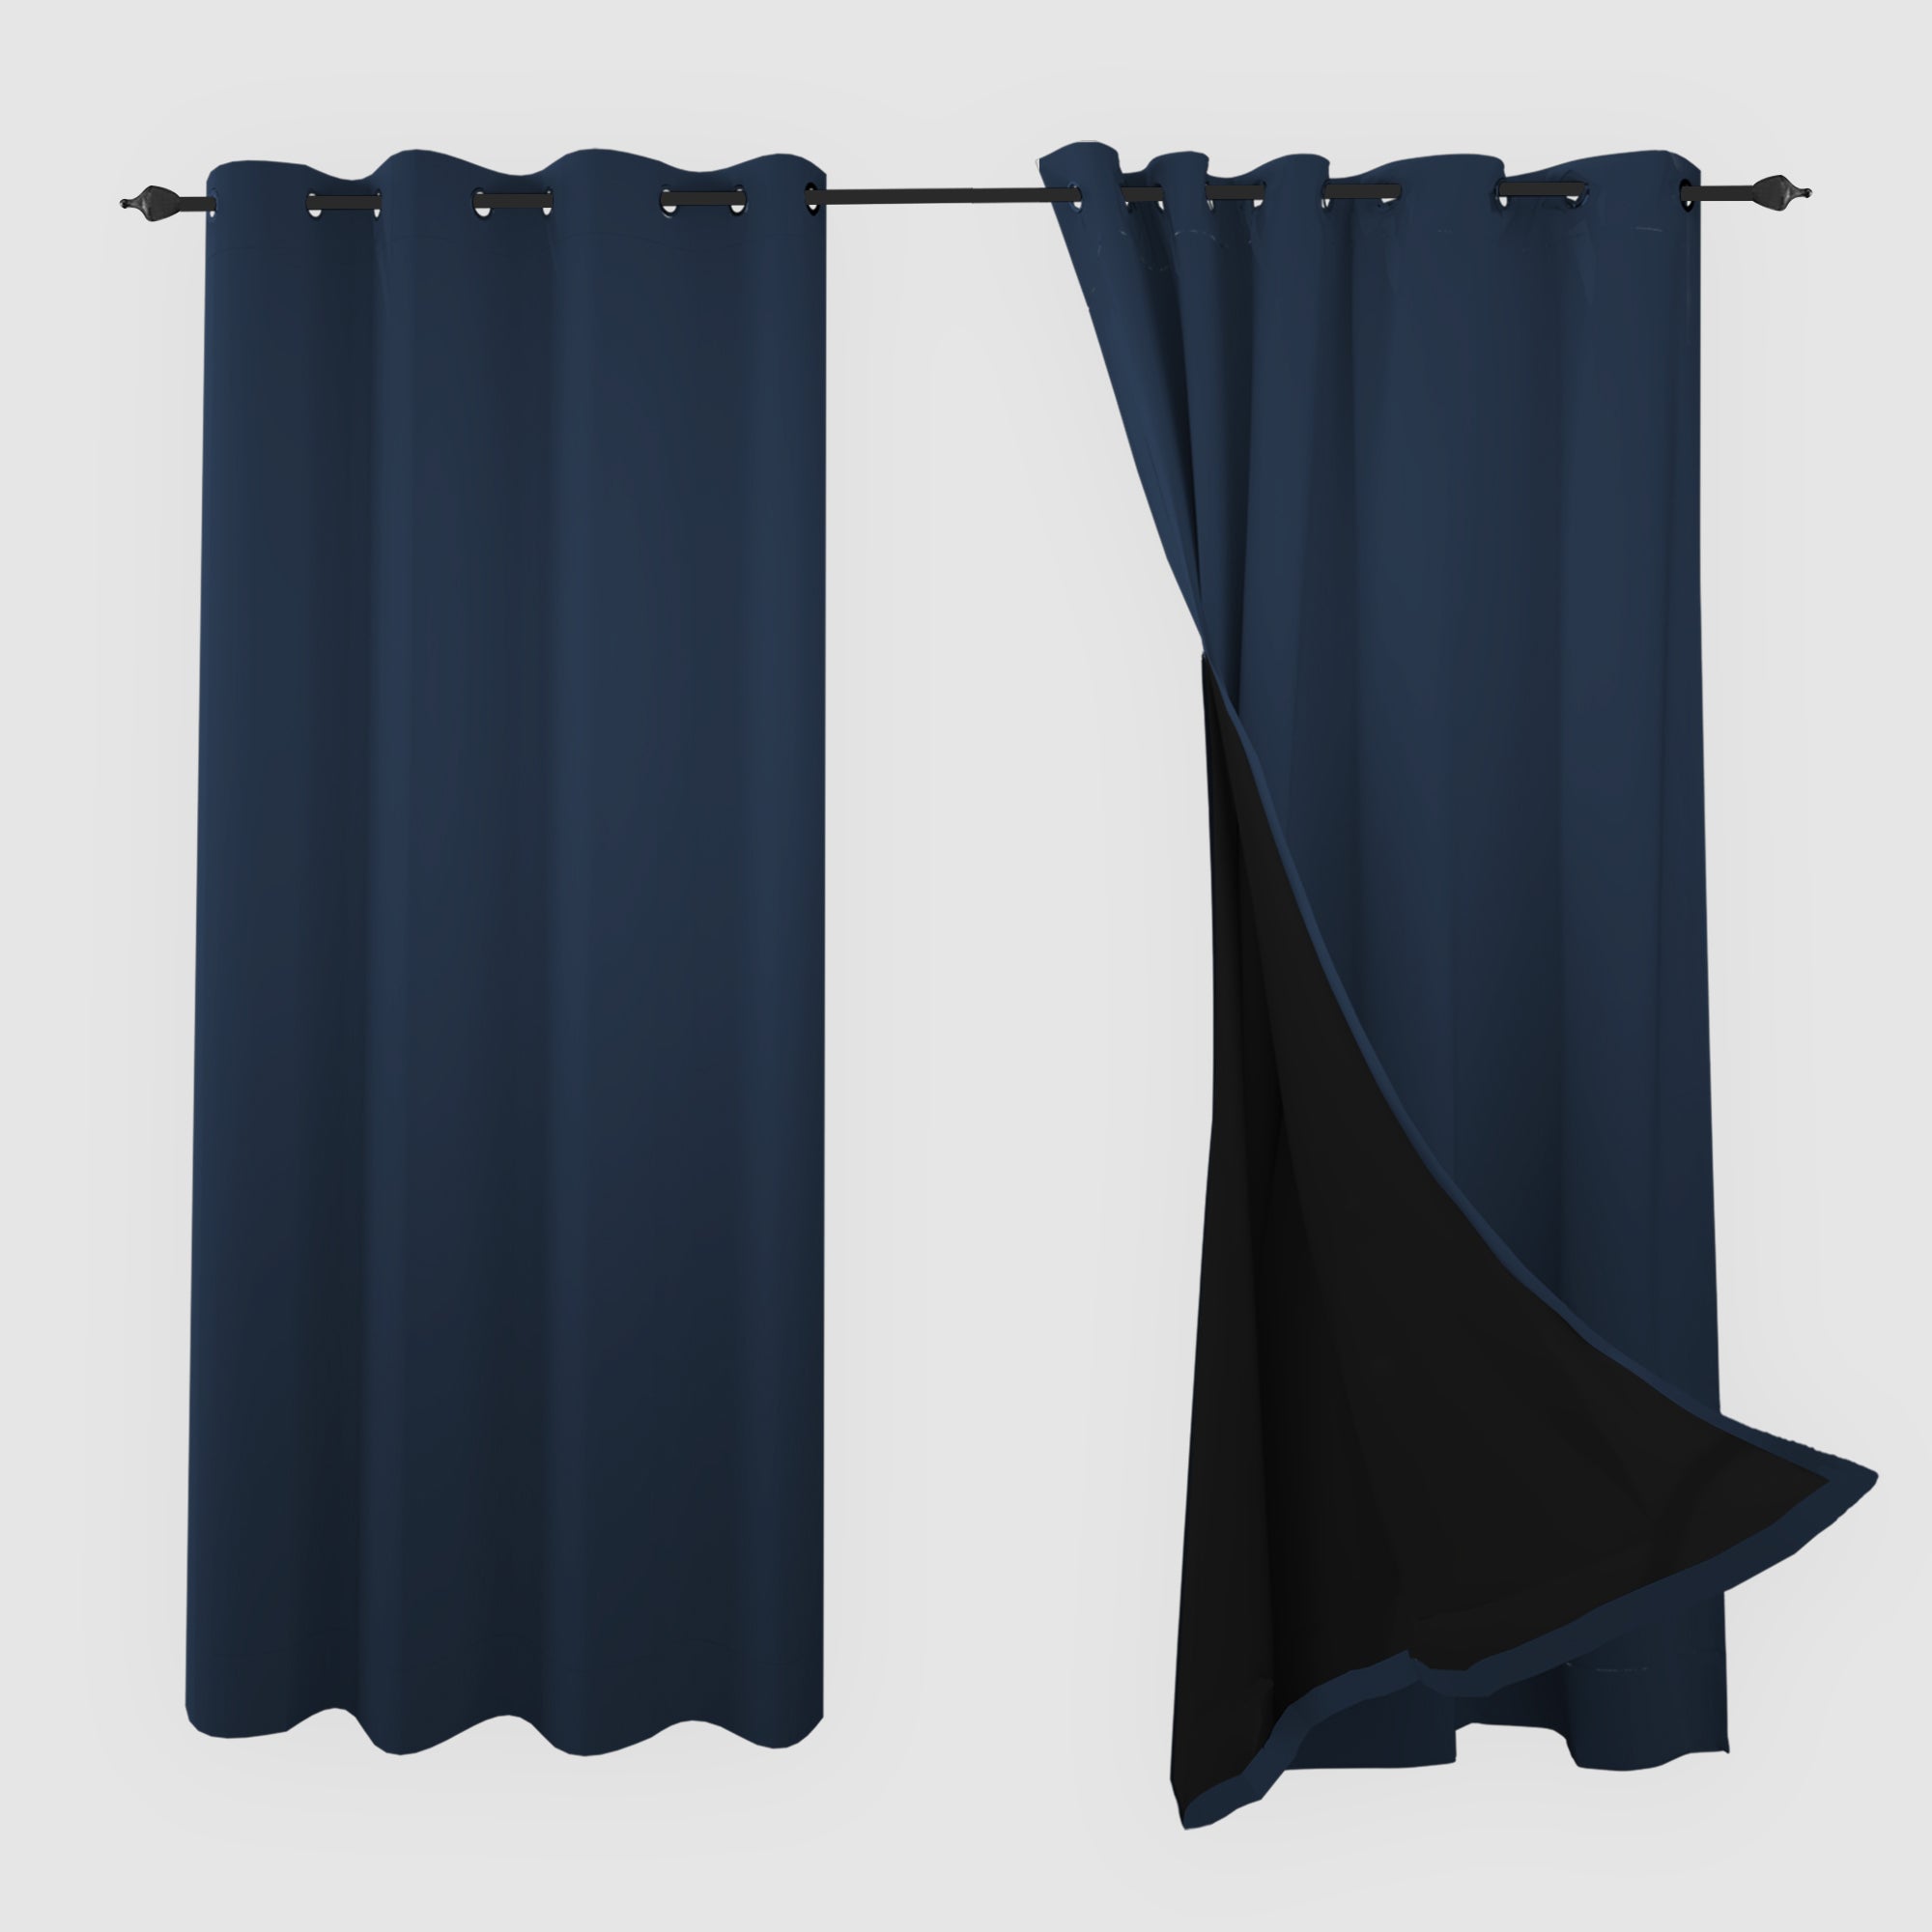 SNOWCITY Blackout Curtains Navy Blue - Grommet Top